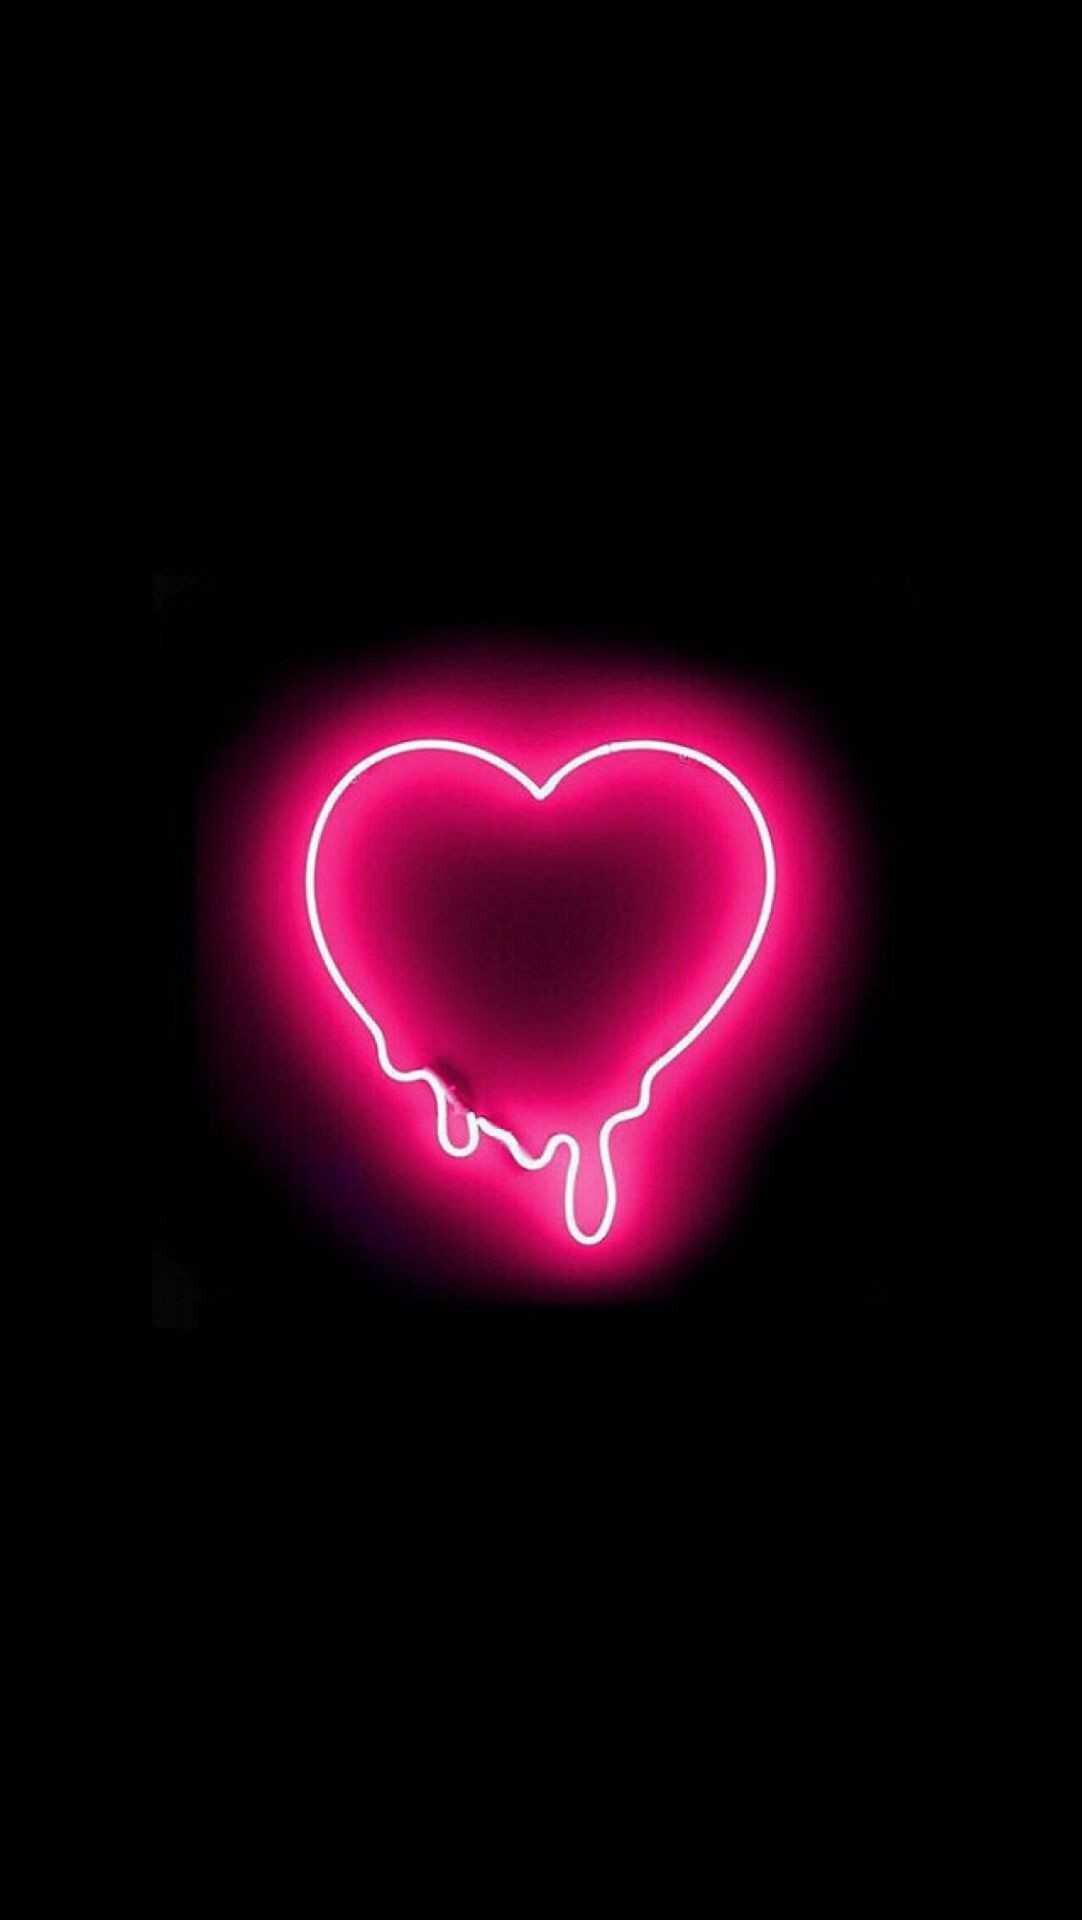 Glow in the Dark: Neon heart, Glowing, Minimalistic, Fluorescent heart. 1090x1920 HD Wallpaper.